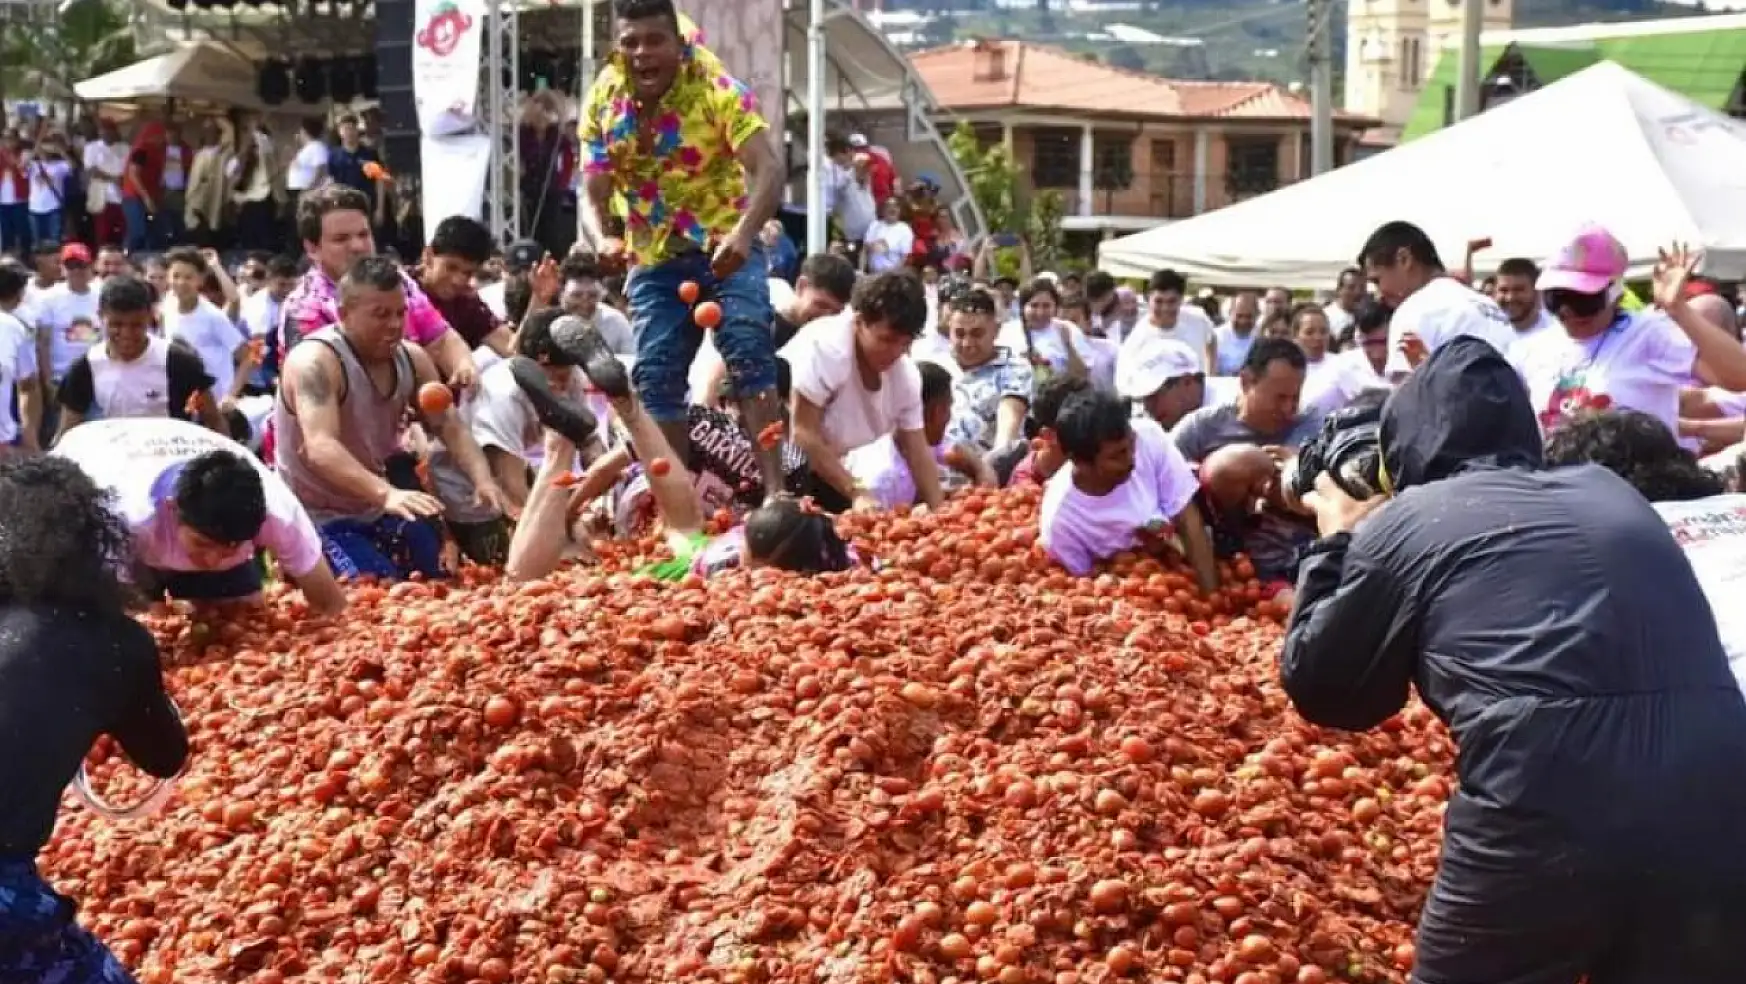 Kolombiya'daki domates festivali La Tomatina'da 40 ton domates kullanıldı